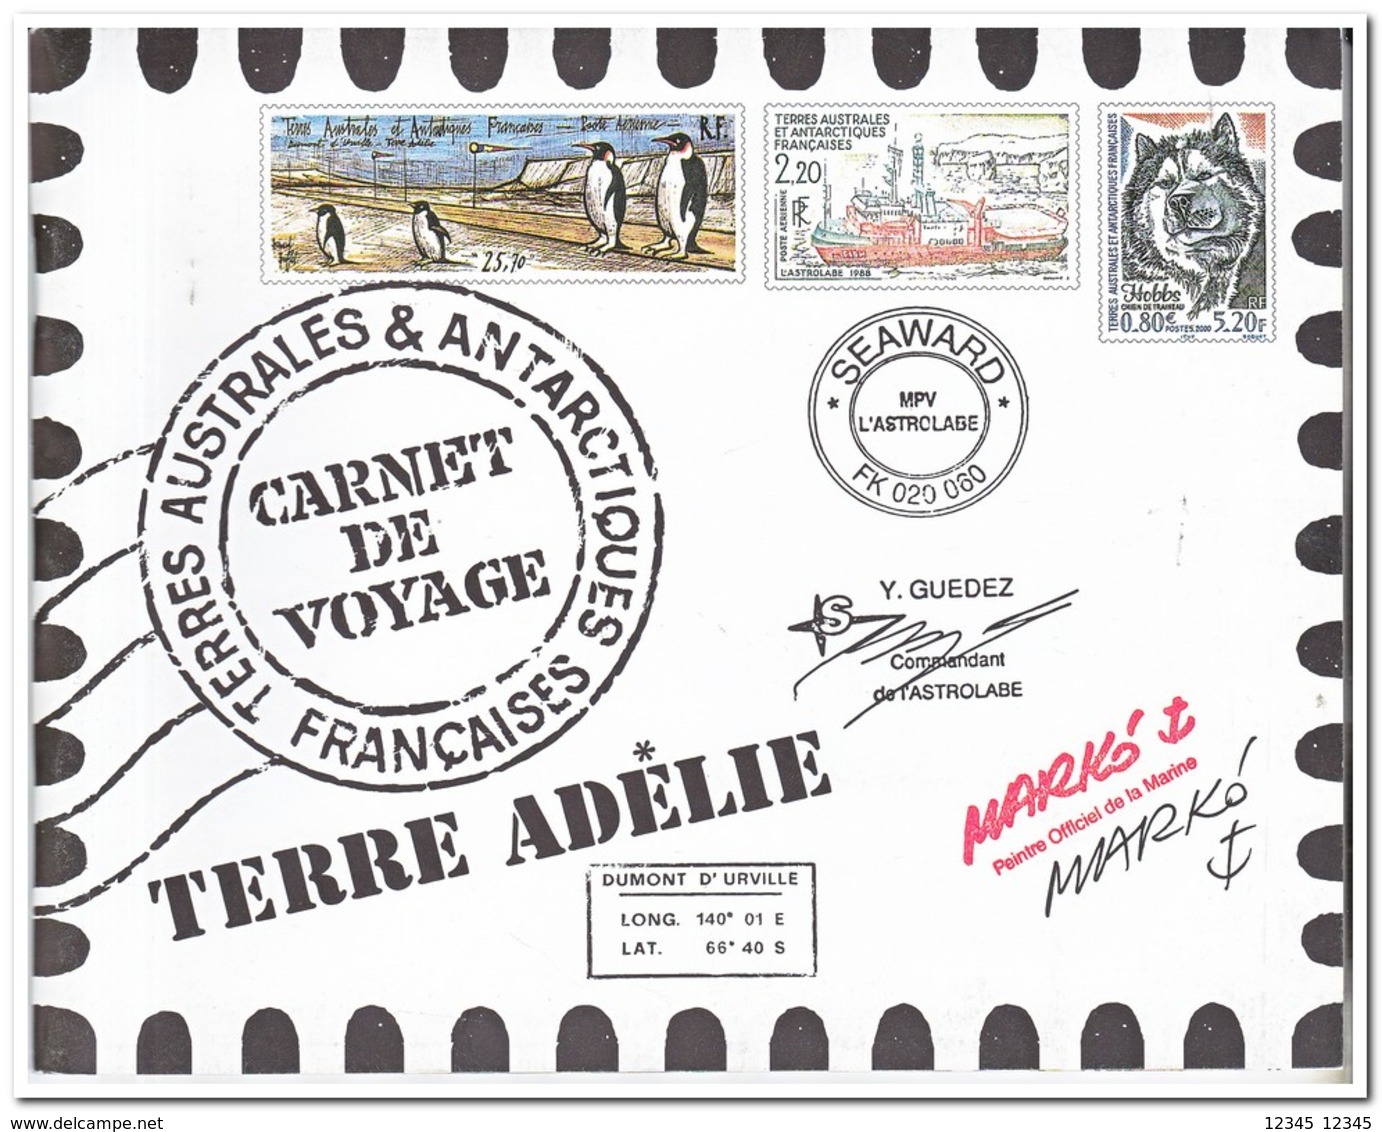 Frans Antarctica 2001, Postfris MNH, Carnet De Voyage ( Booklet, Carnet ) - Boekjes